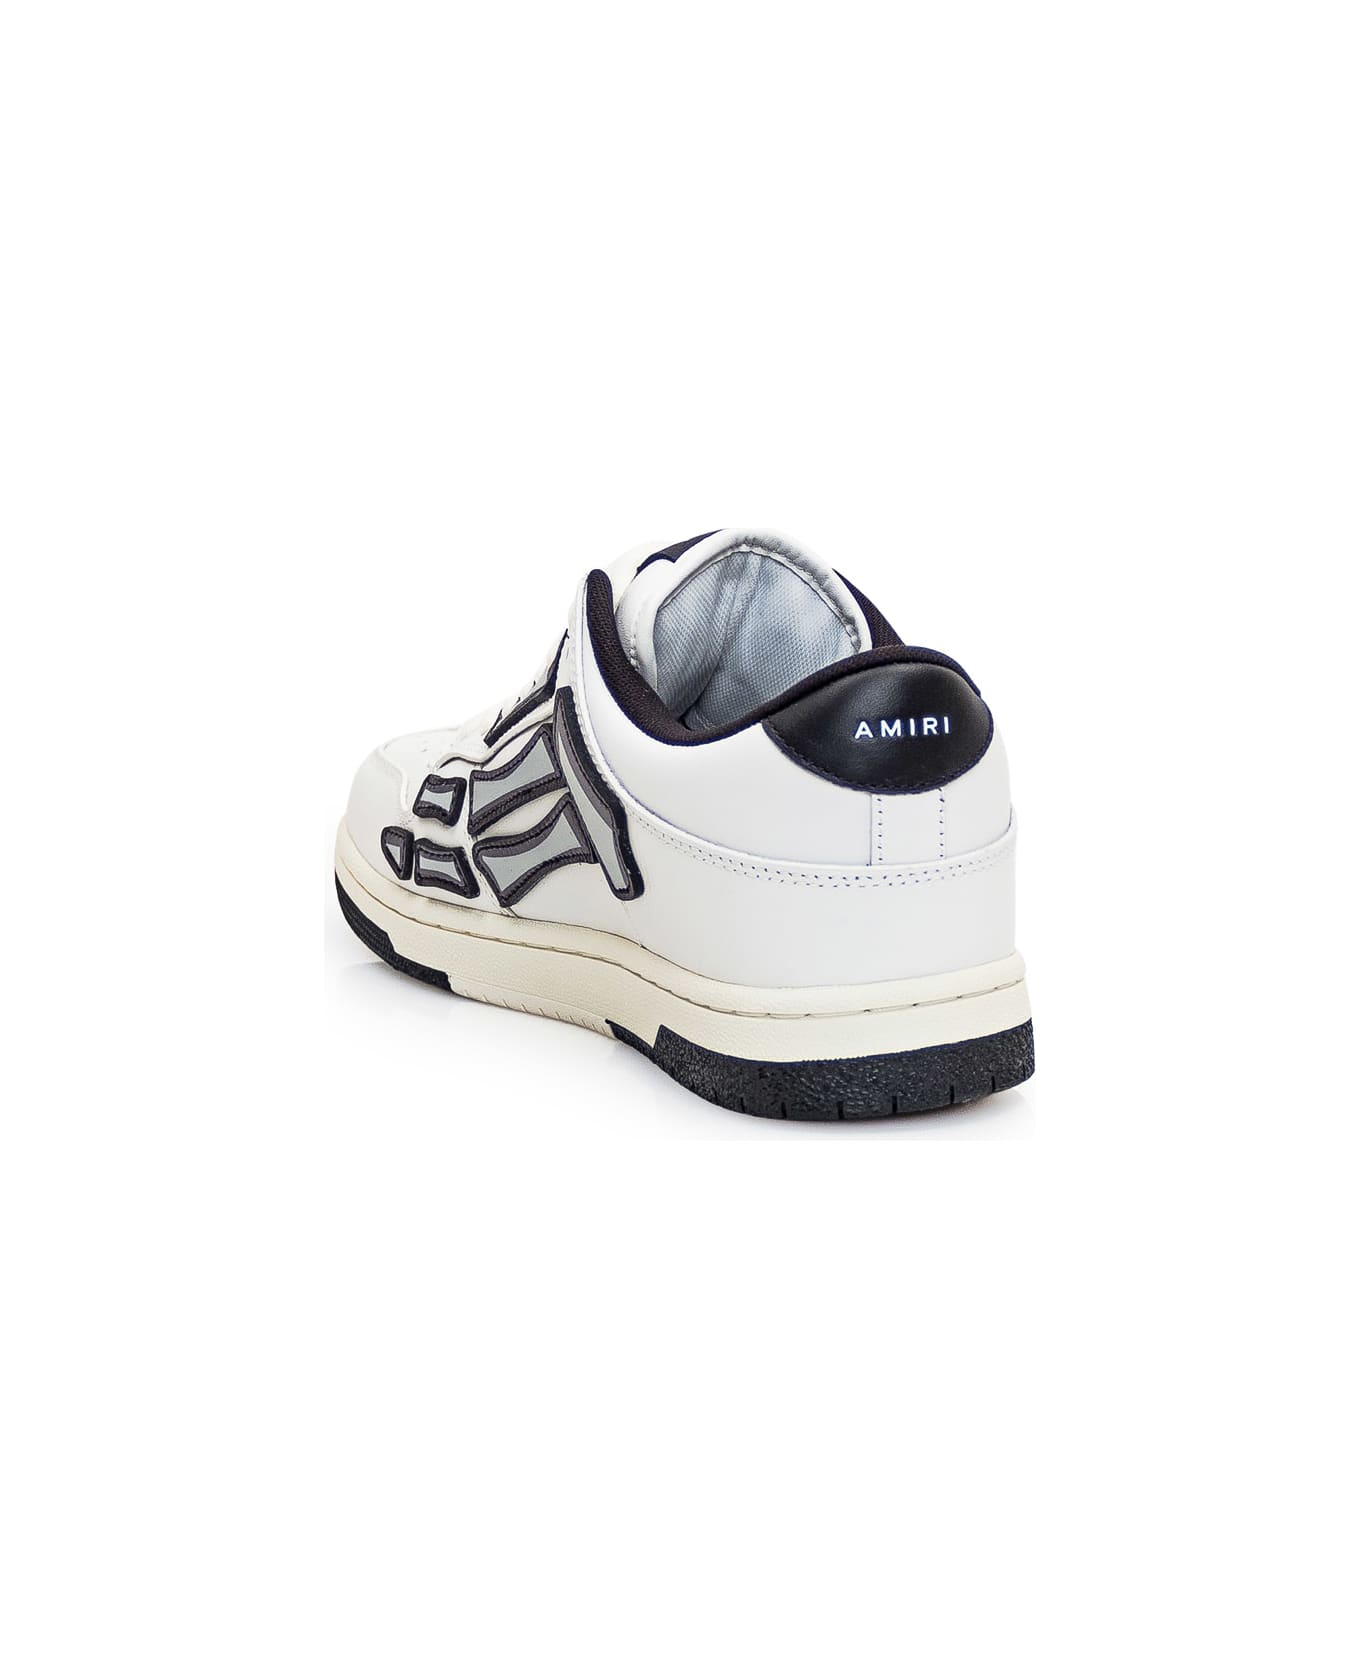 AMIRI Skel Top Sneaker - WHITE/BLACK